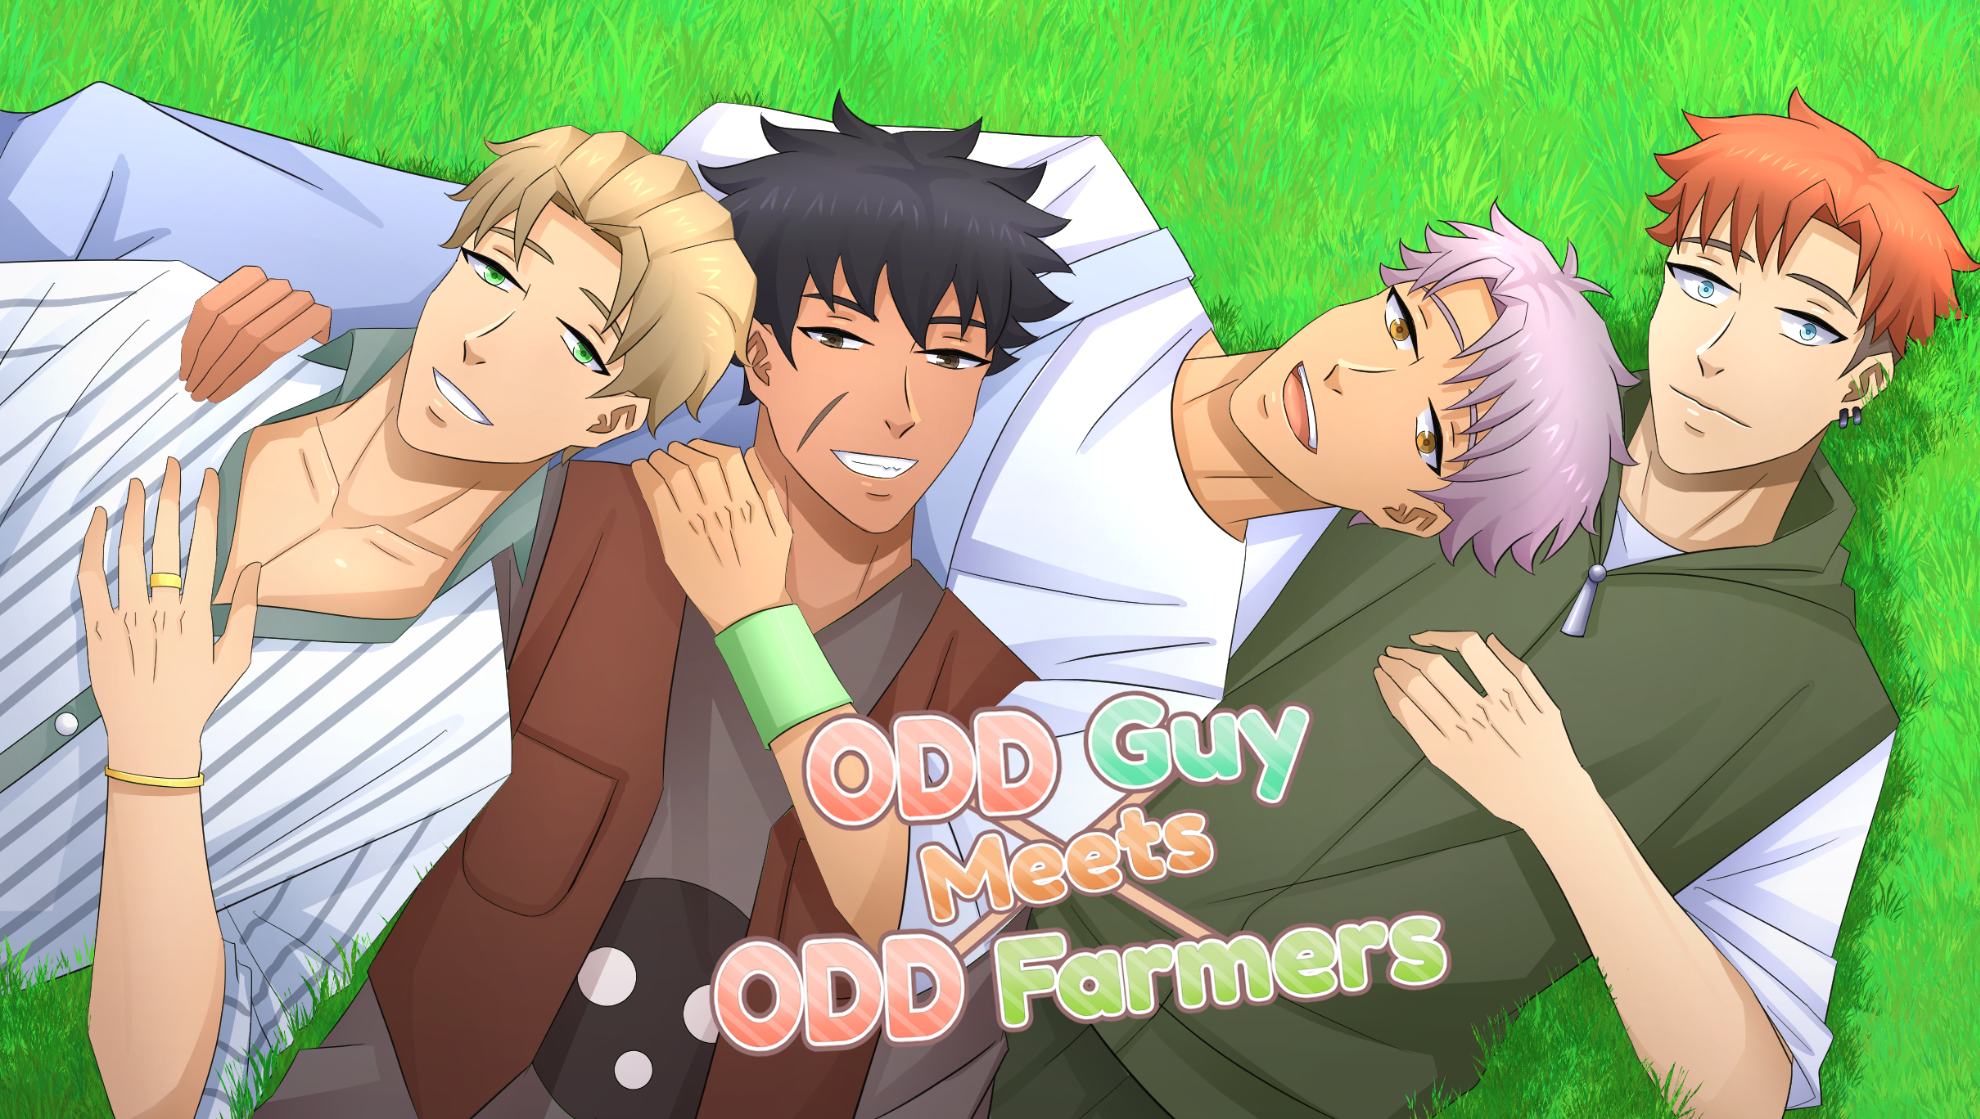 Odd Guy Meets Odd Farmers - BL